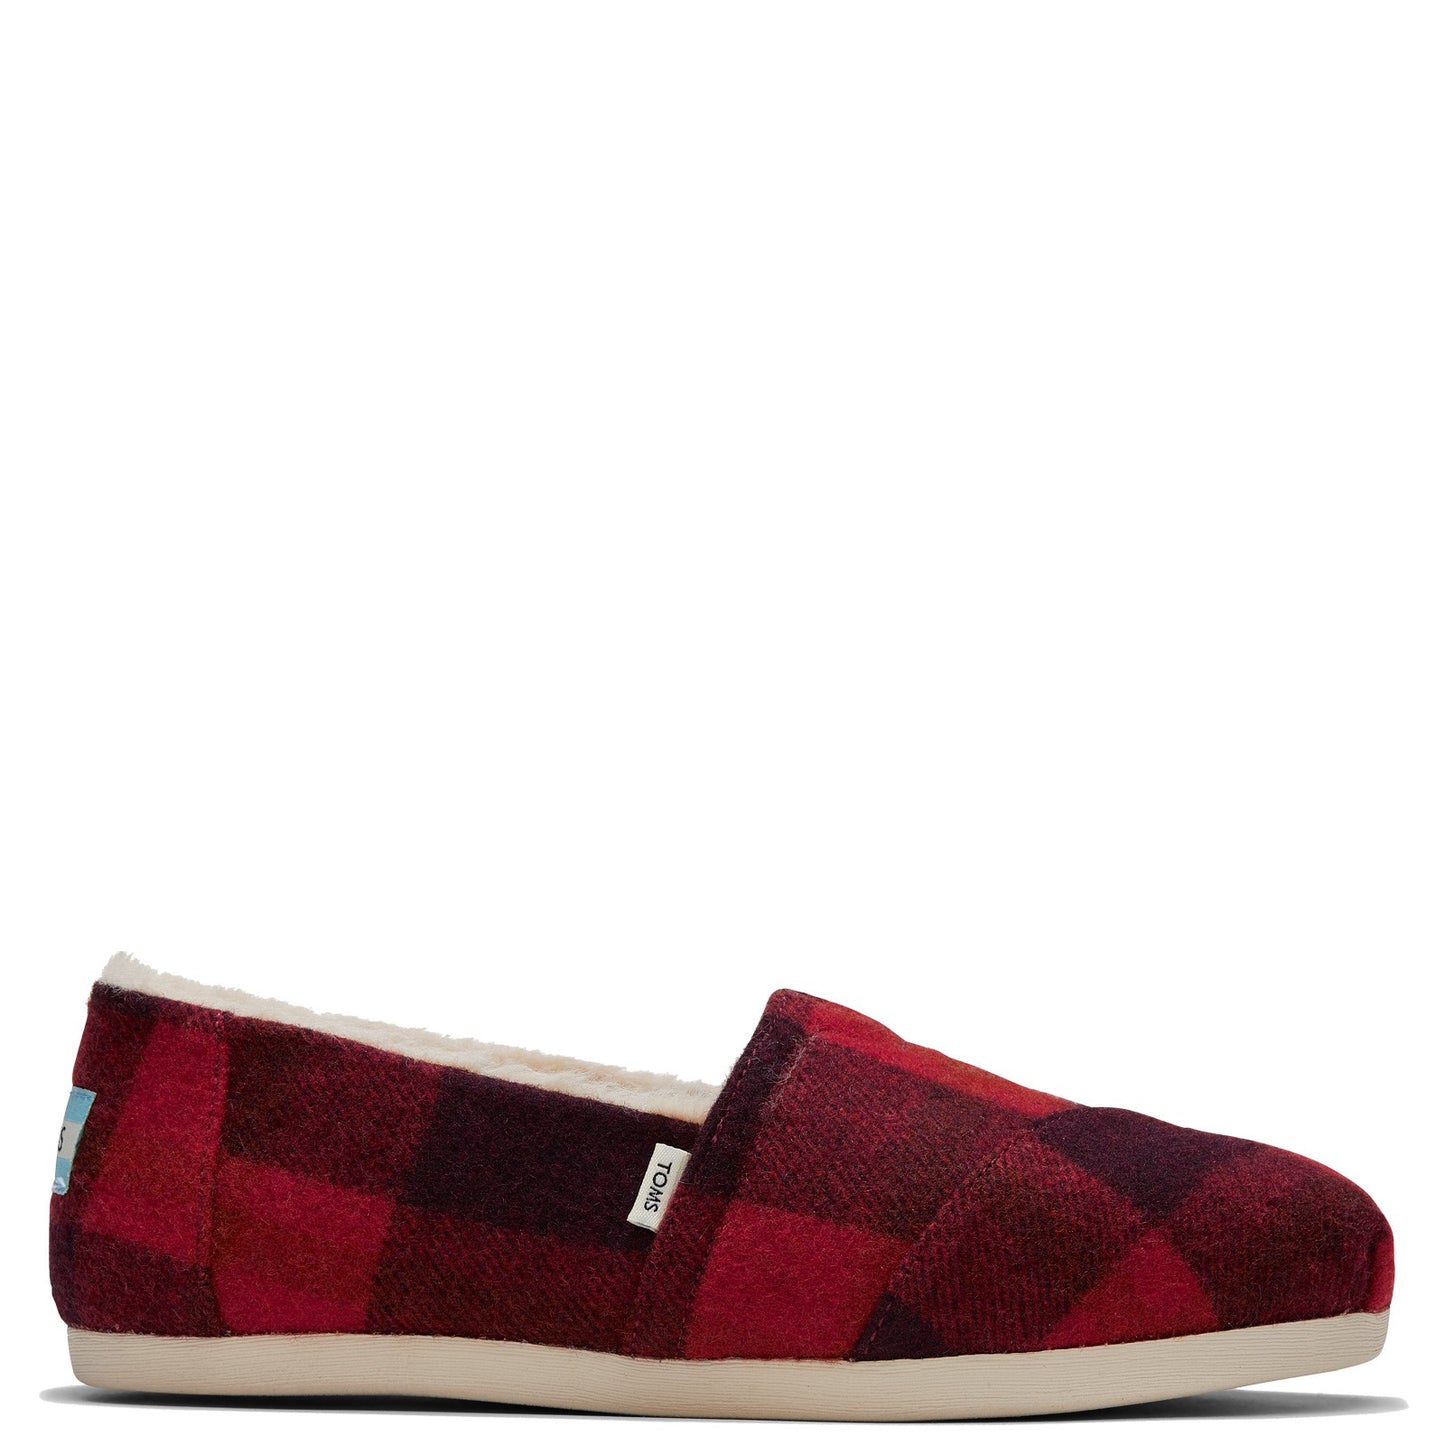 Peltz Shoes  Women's Toms Alpargata Faux Fur Lined Slip-On RED PLAID 10016748